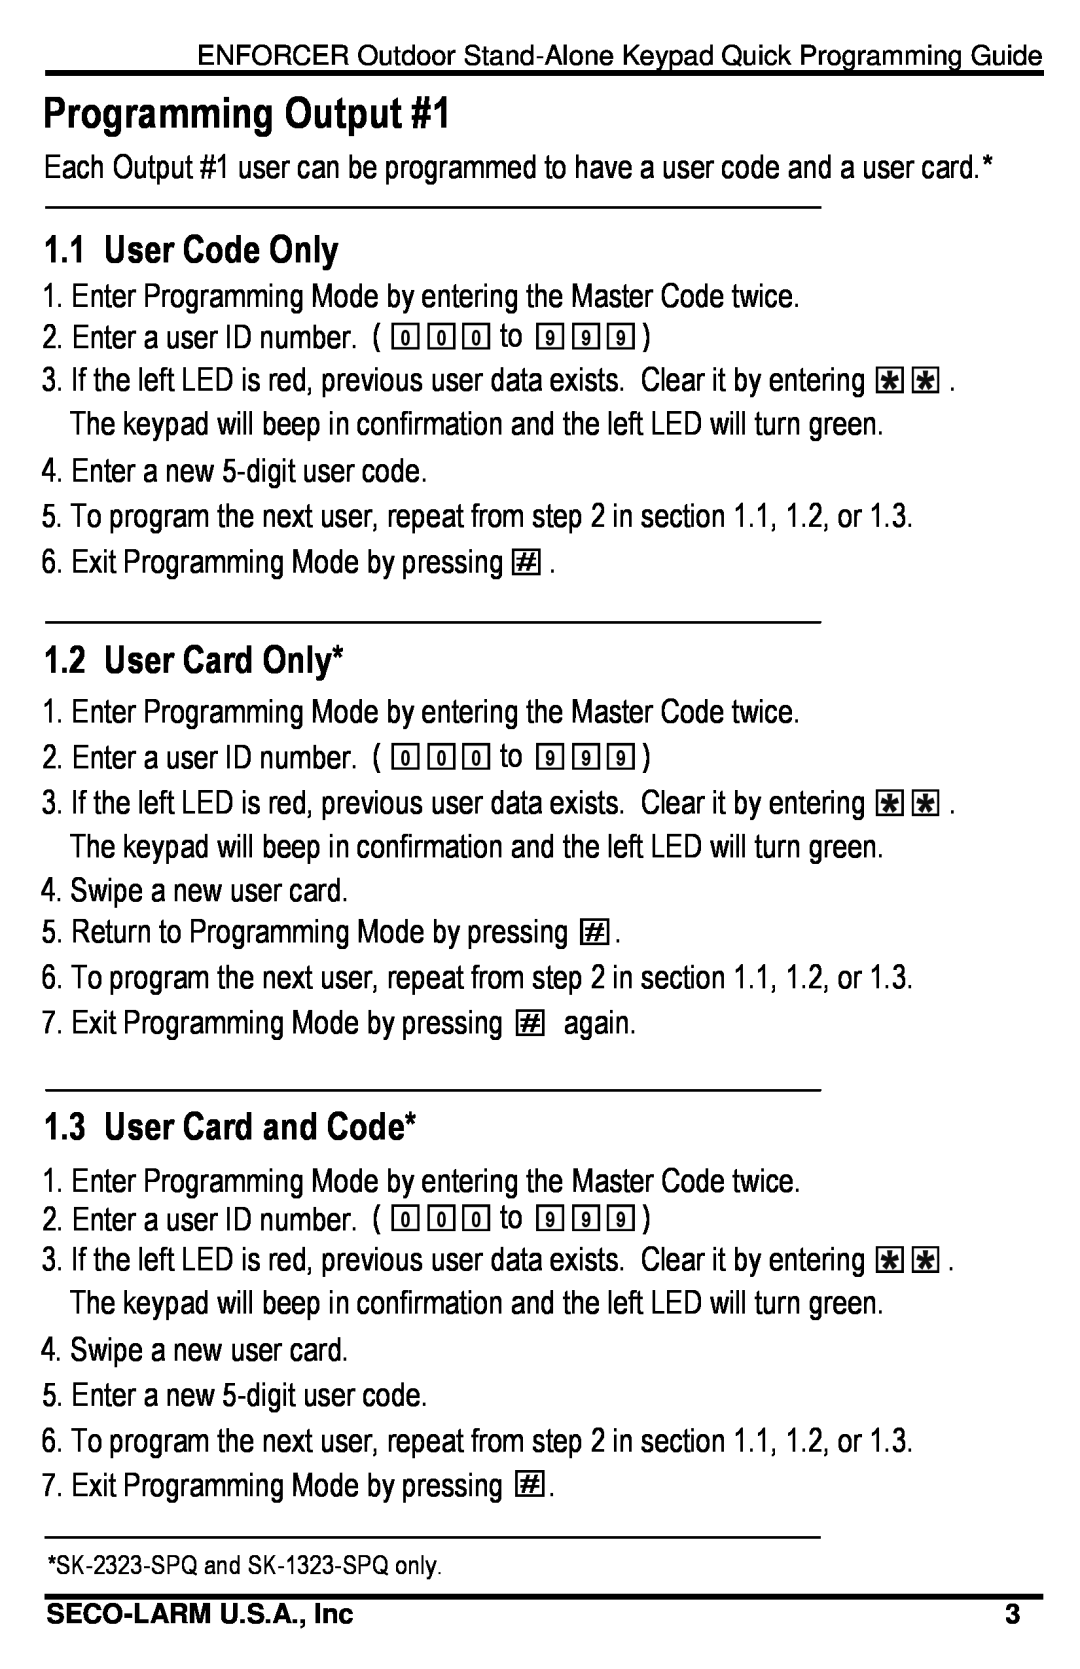 SECO-LARM USA SK-1323-SPQ, SK-2323-SDQ Programming Output #1, 1.1User Code Only, User Card Only, User Card and Code 